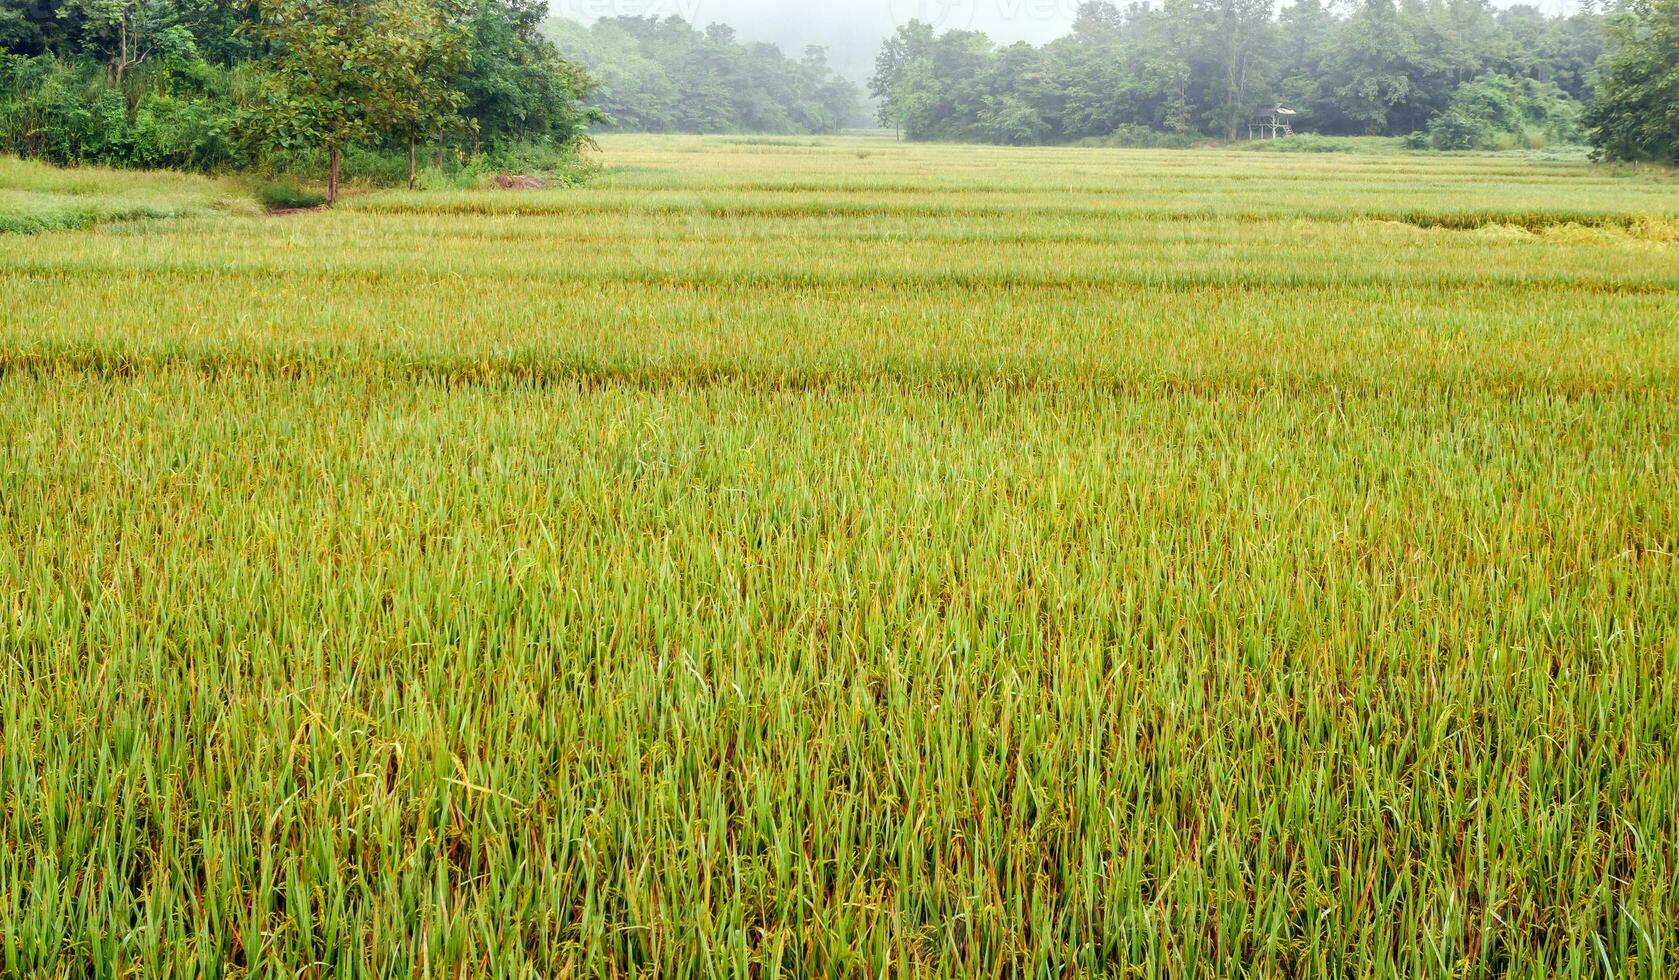 rijst- velden met rijst- granen in de buurt wezen geoogst met de nevel en zacht zonlicht in de ochtend.boerderij rijstveld en landbouw concept. foto